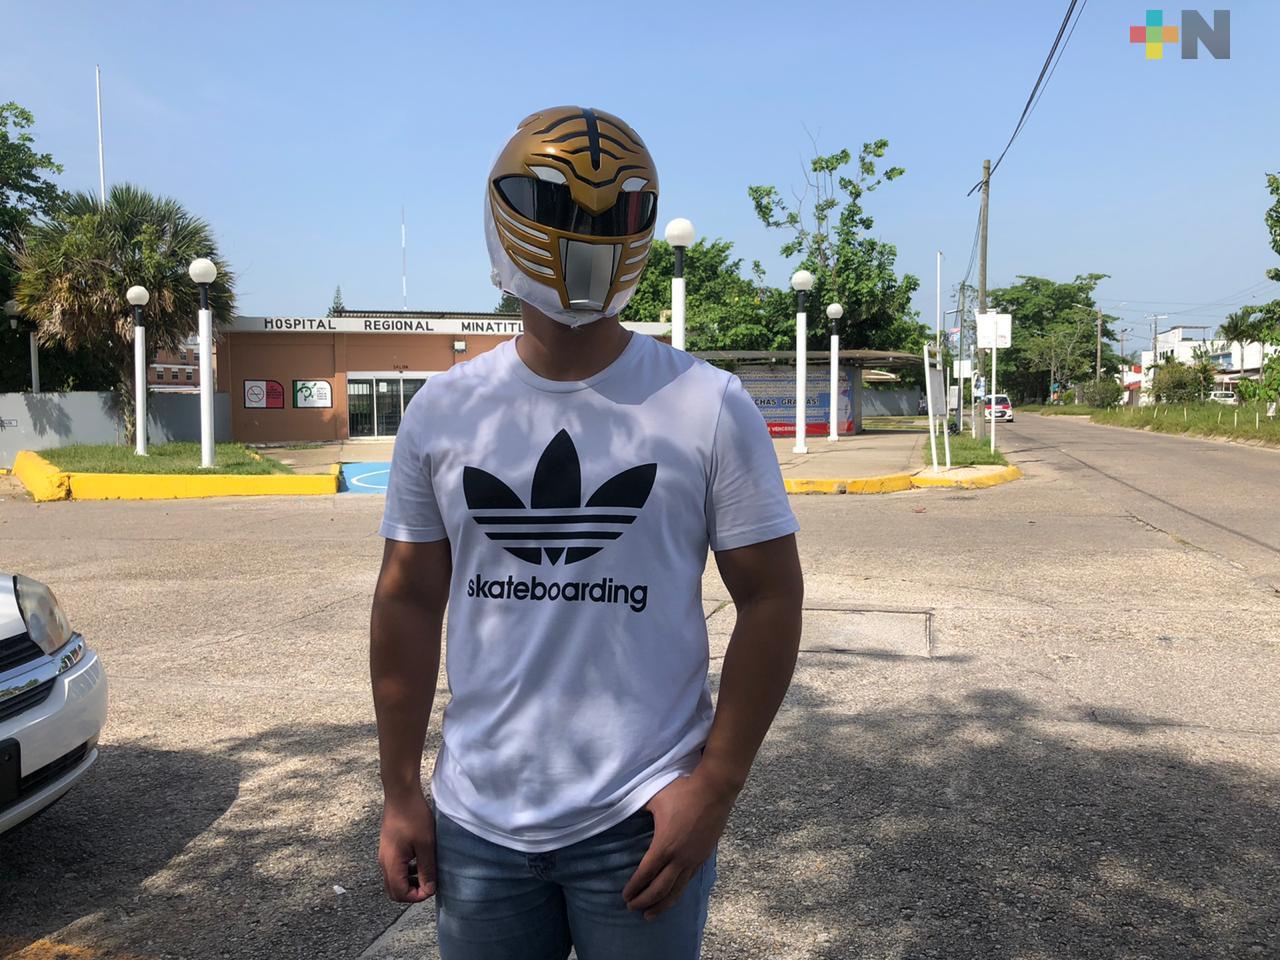 De camillero en hospital de Minatitlán, a un Power Ranger